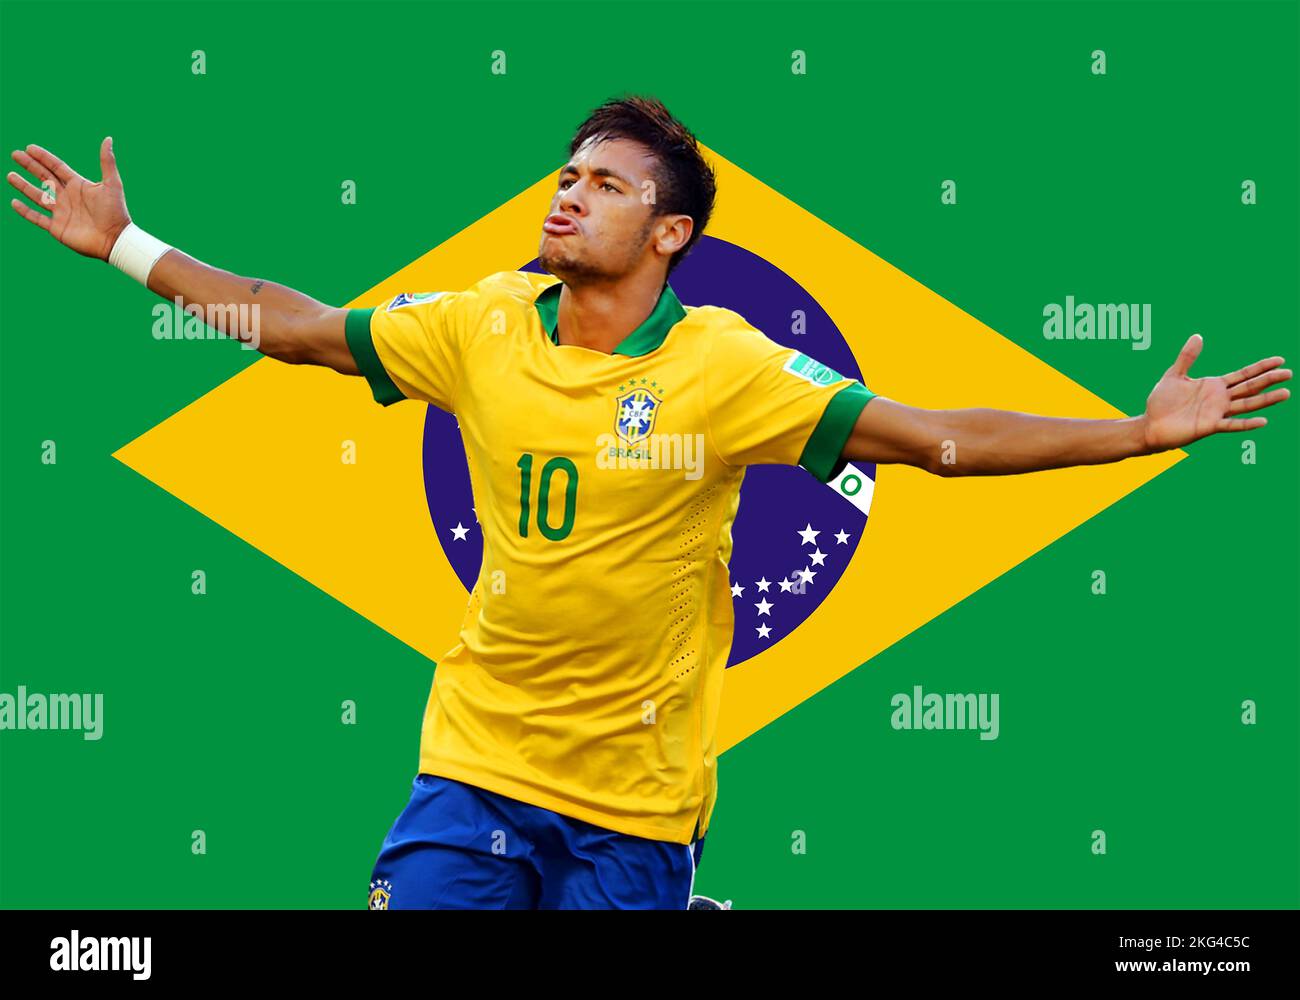 Camiseta del equipo de fútbol de brasil diseño junto con la bandera y el  icono de brasil. diseño y maqueta de camiseta.